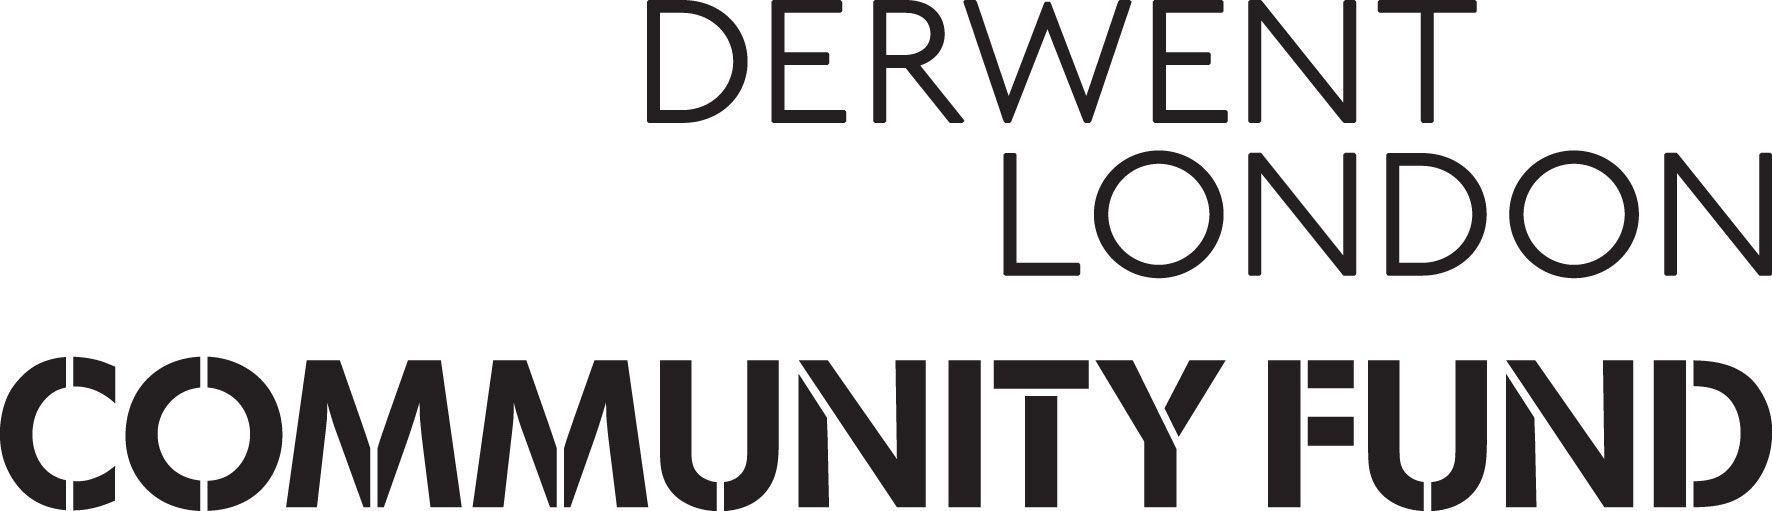 Derwent Logo - Derwent London Community Fund for Tech Belt Update - White Collar ...